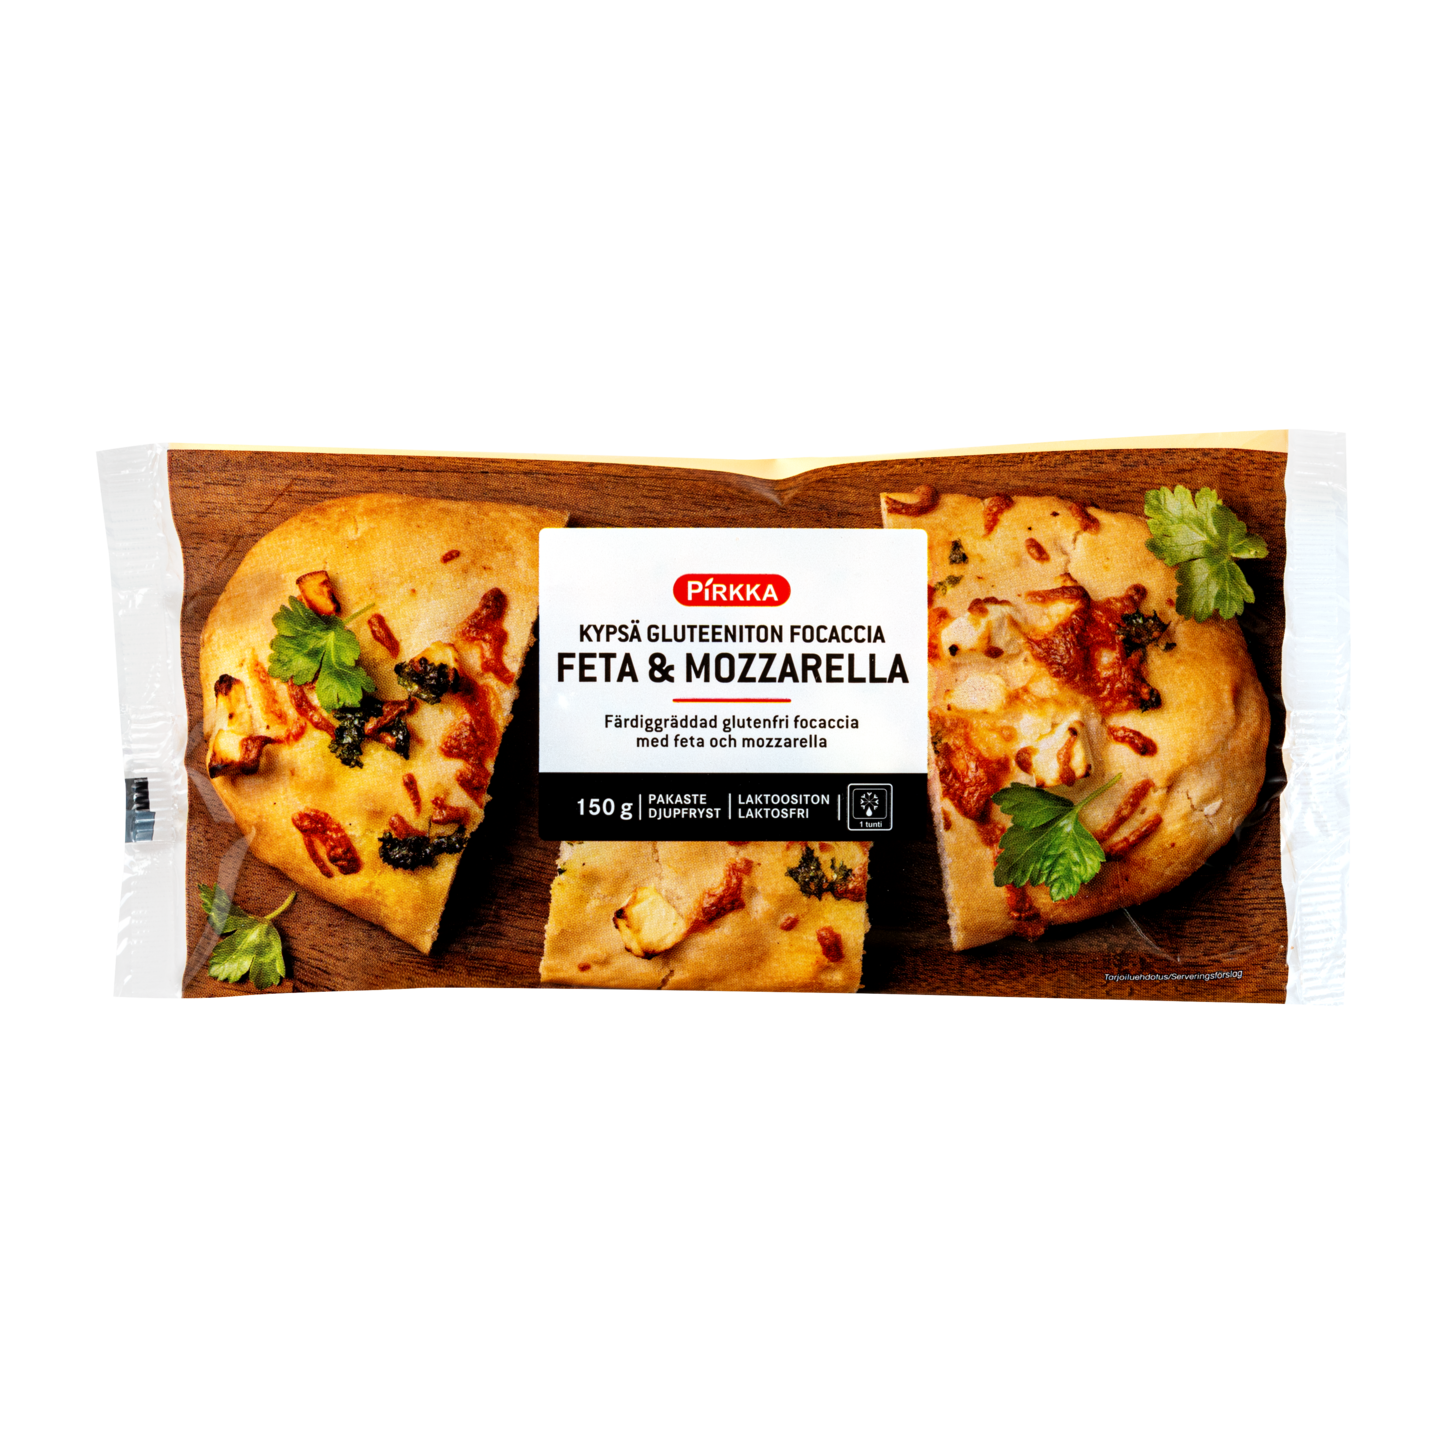 Pirkka kypsä gluteeniton feta-mozzarella focaccia 150g pakaste | K-Ruoka  Verkkokauppa